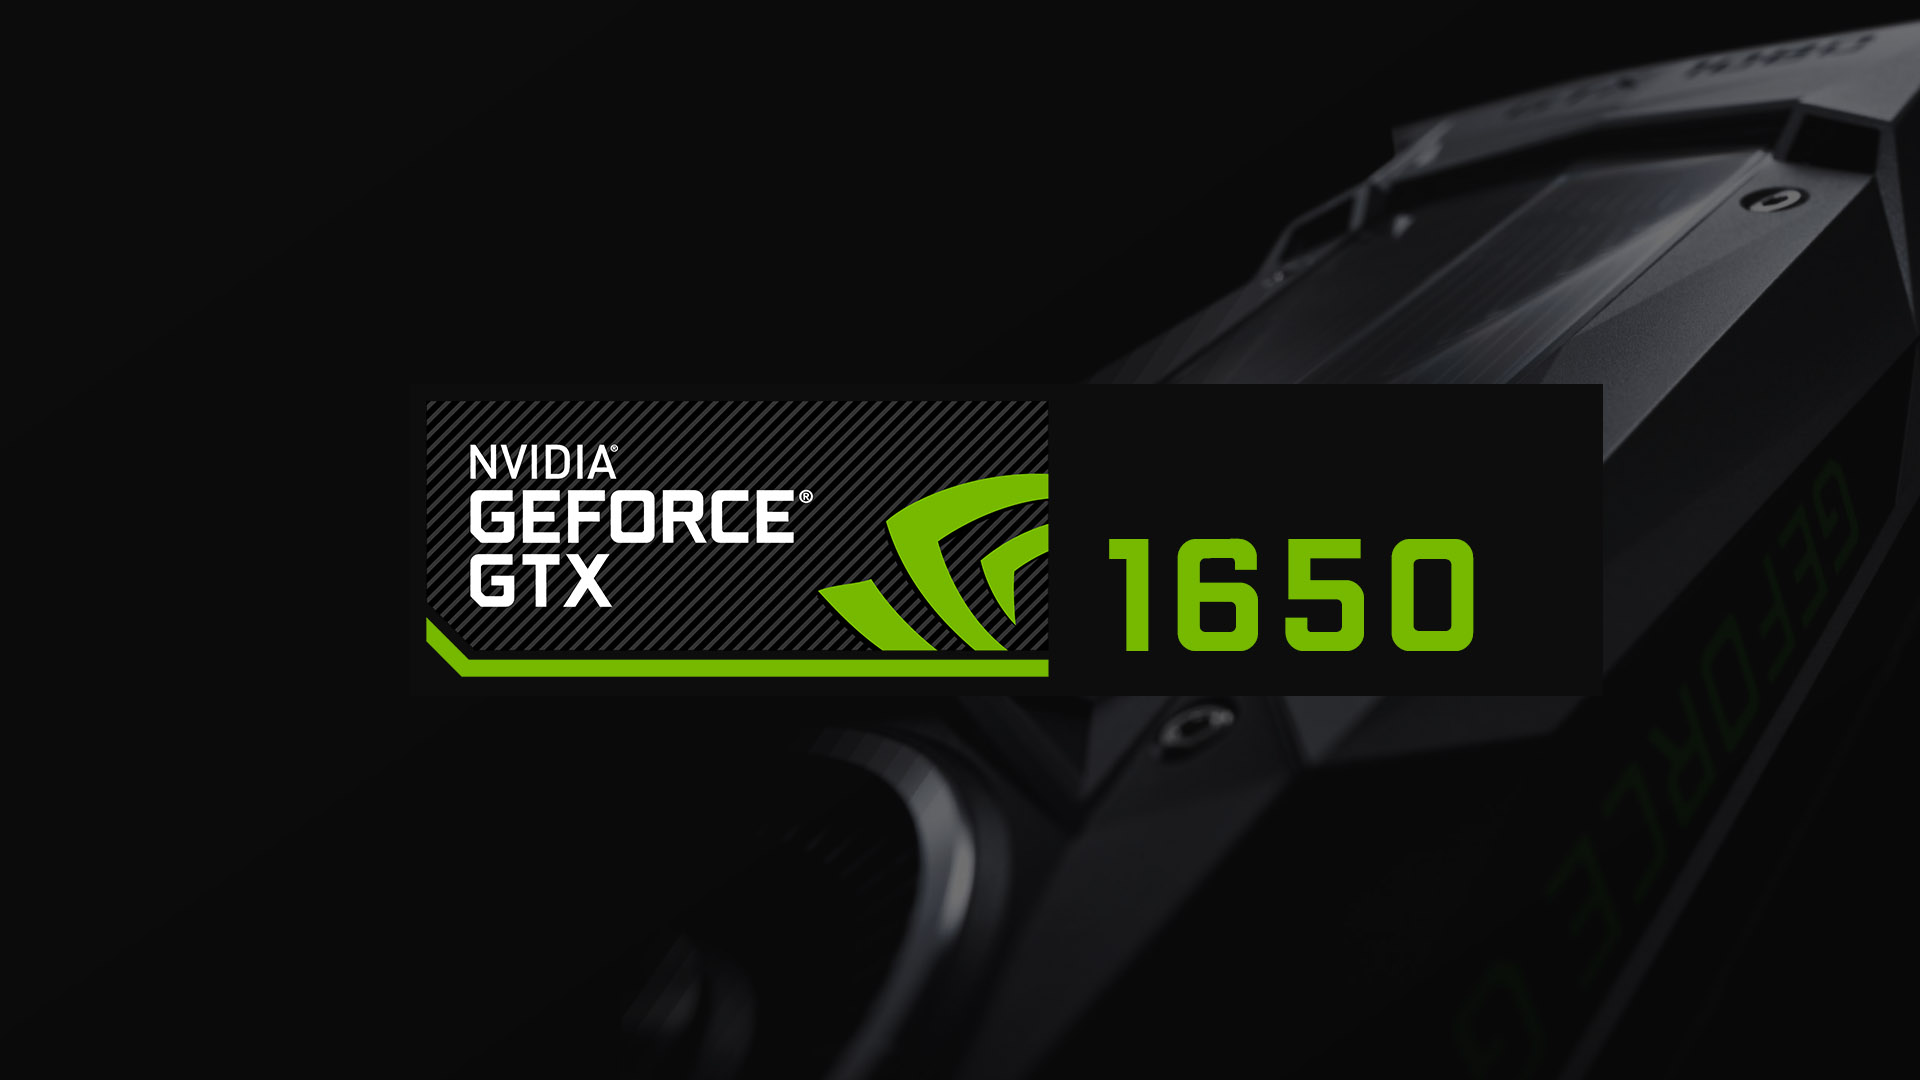 NVIDIAがGeForce GTX 1650の供給を4月頃から増やす予定